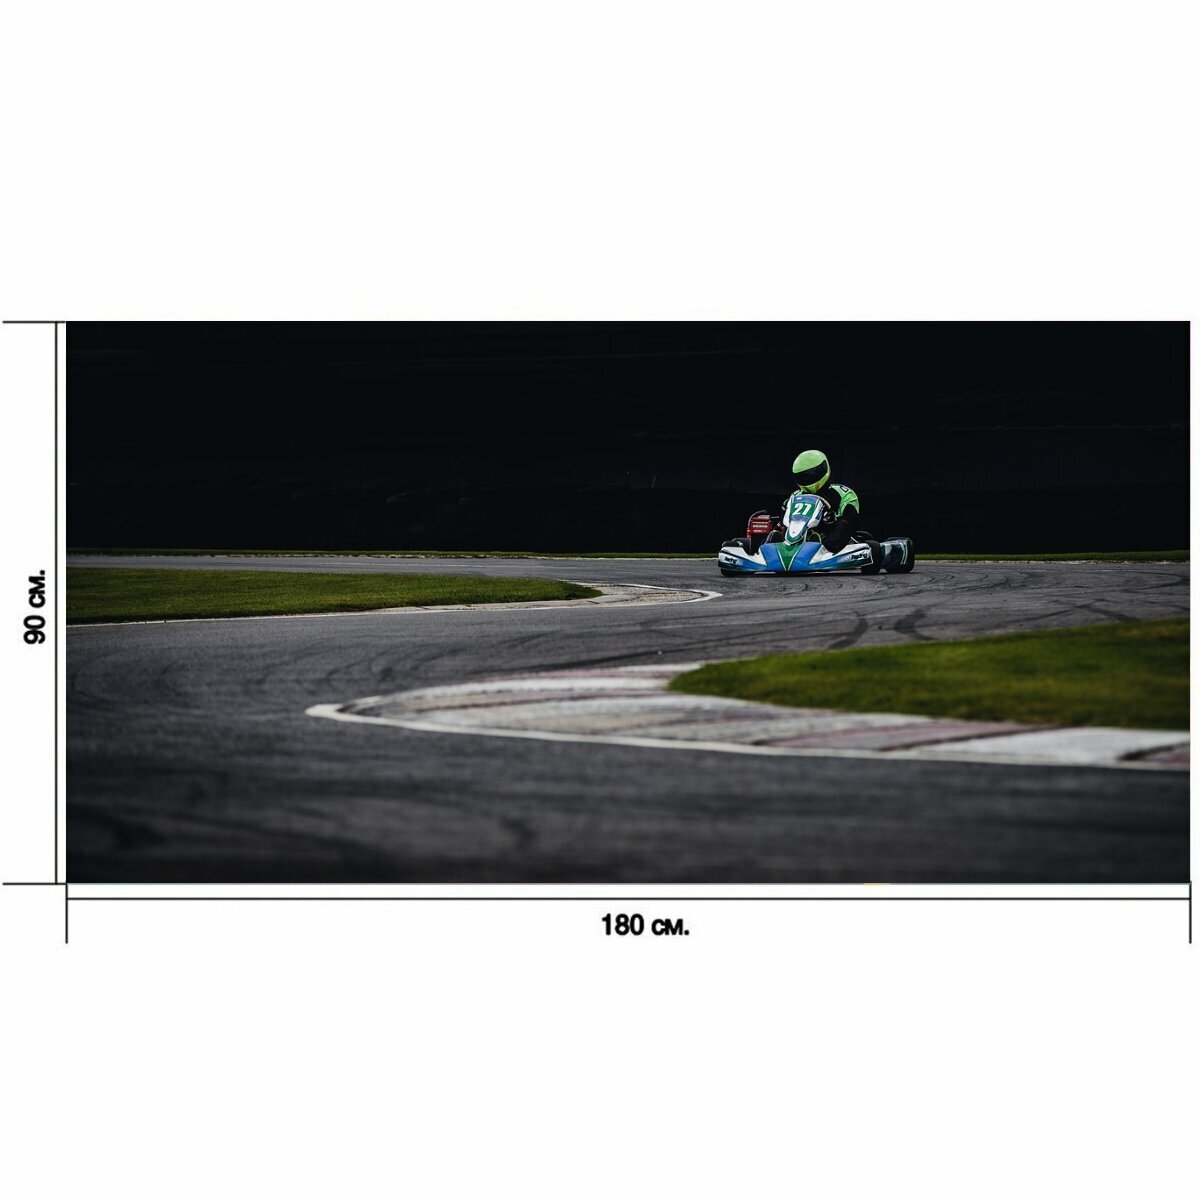 Большой постер "Спорт, приключение, испытание" 180 x 90 см. для интерьера